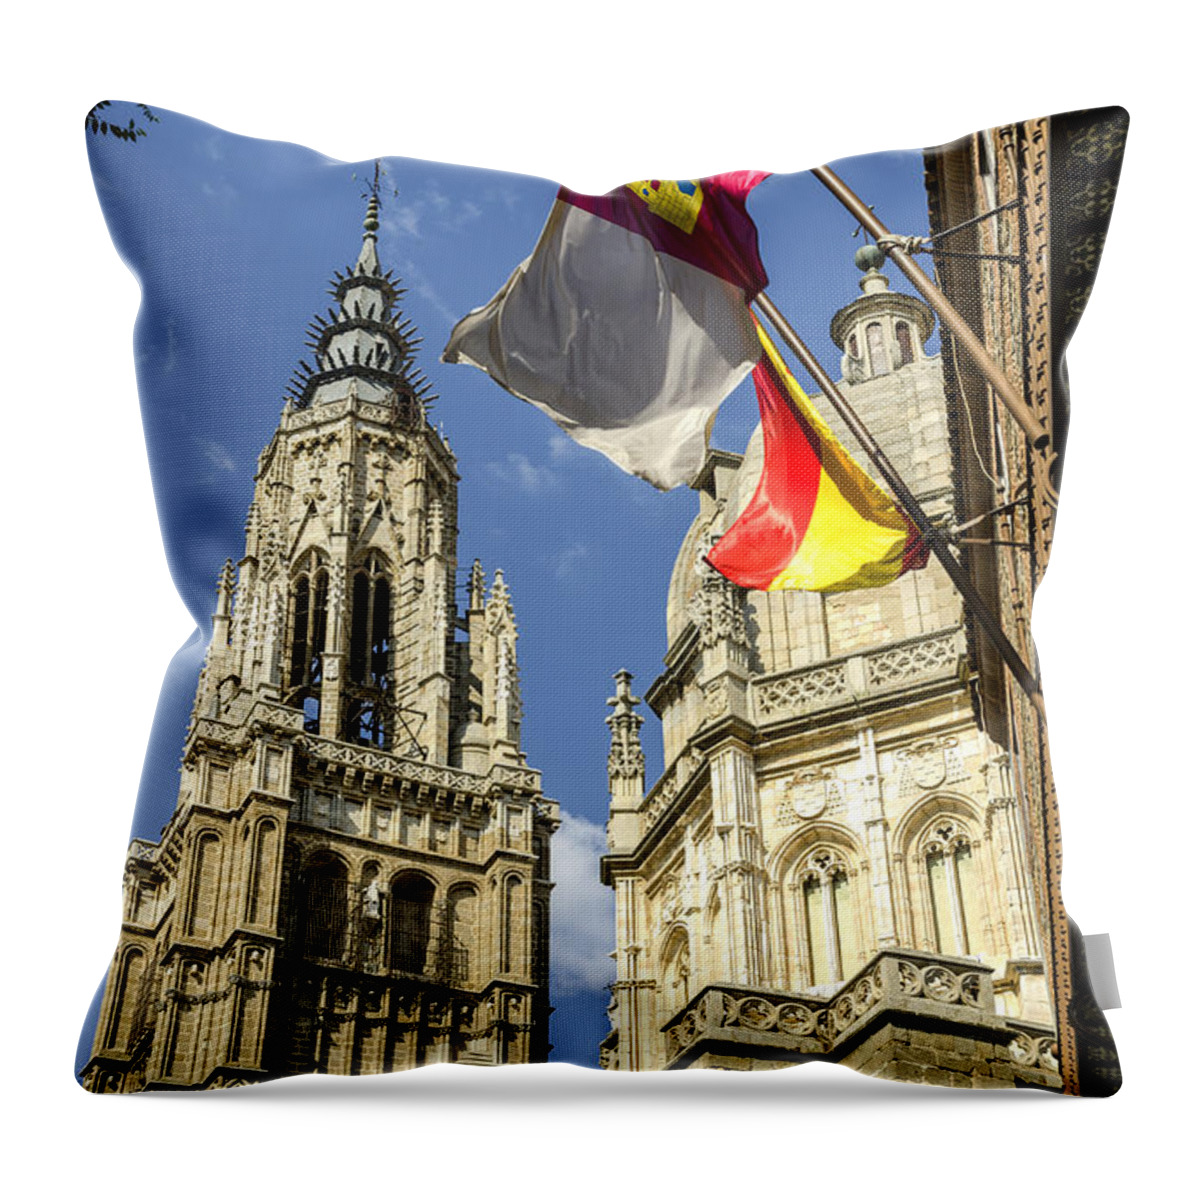 Toledo Throw Pillow featuring the photograph Catedral de Santa Maria de Toledo by Pablo Lopez